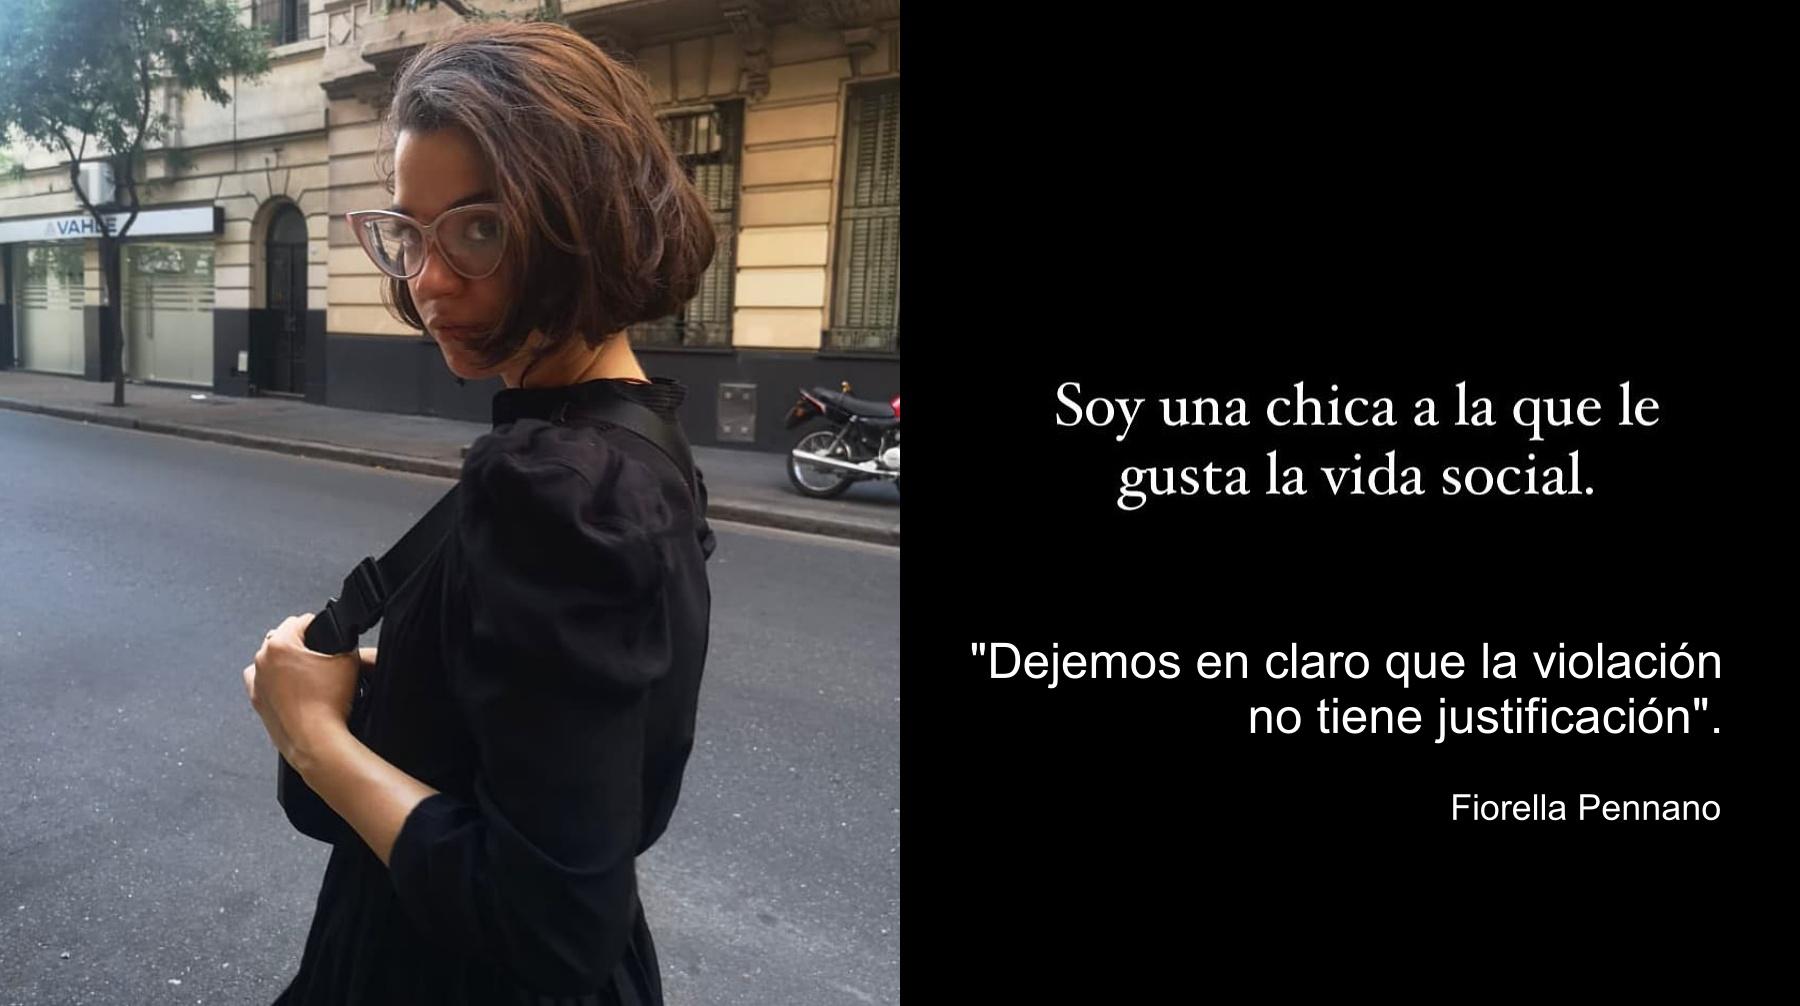 Fiorella Pennano está entre las actrices que se pronunciaron contra los que culpan a la mujer en casos de violación. Foto: Fiorella Pennano en Instagram.